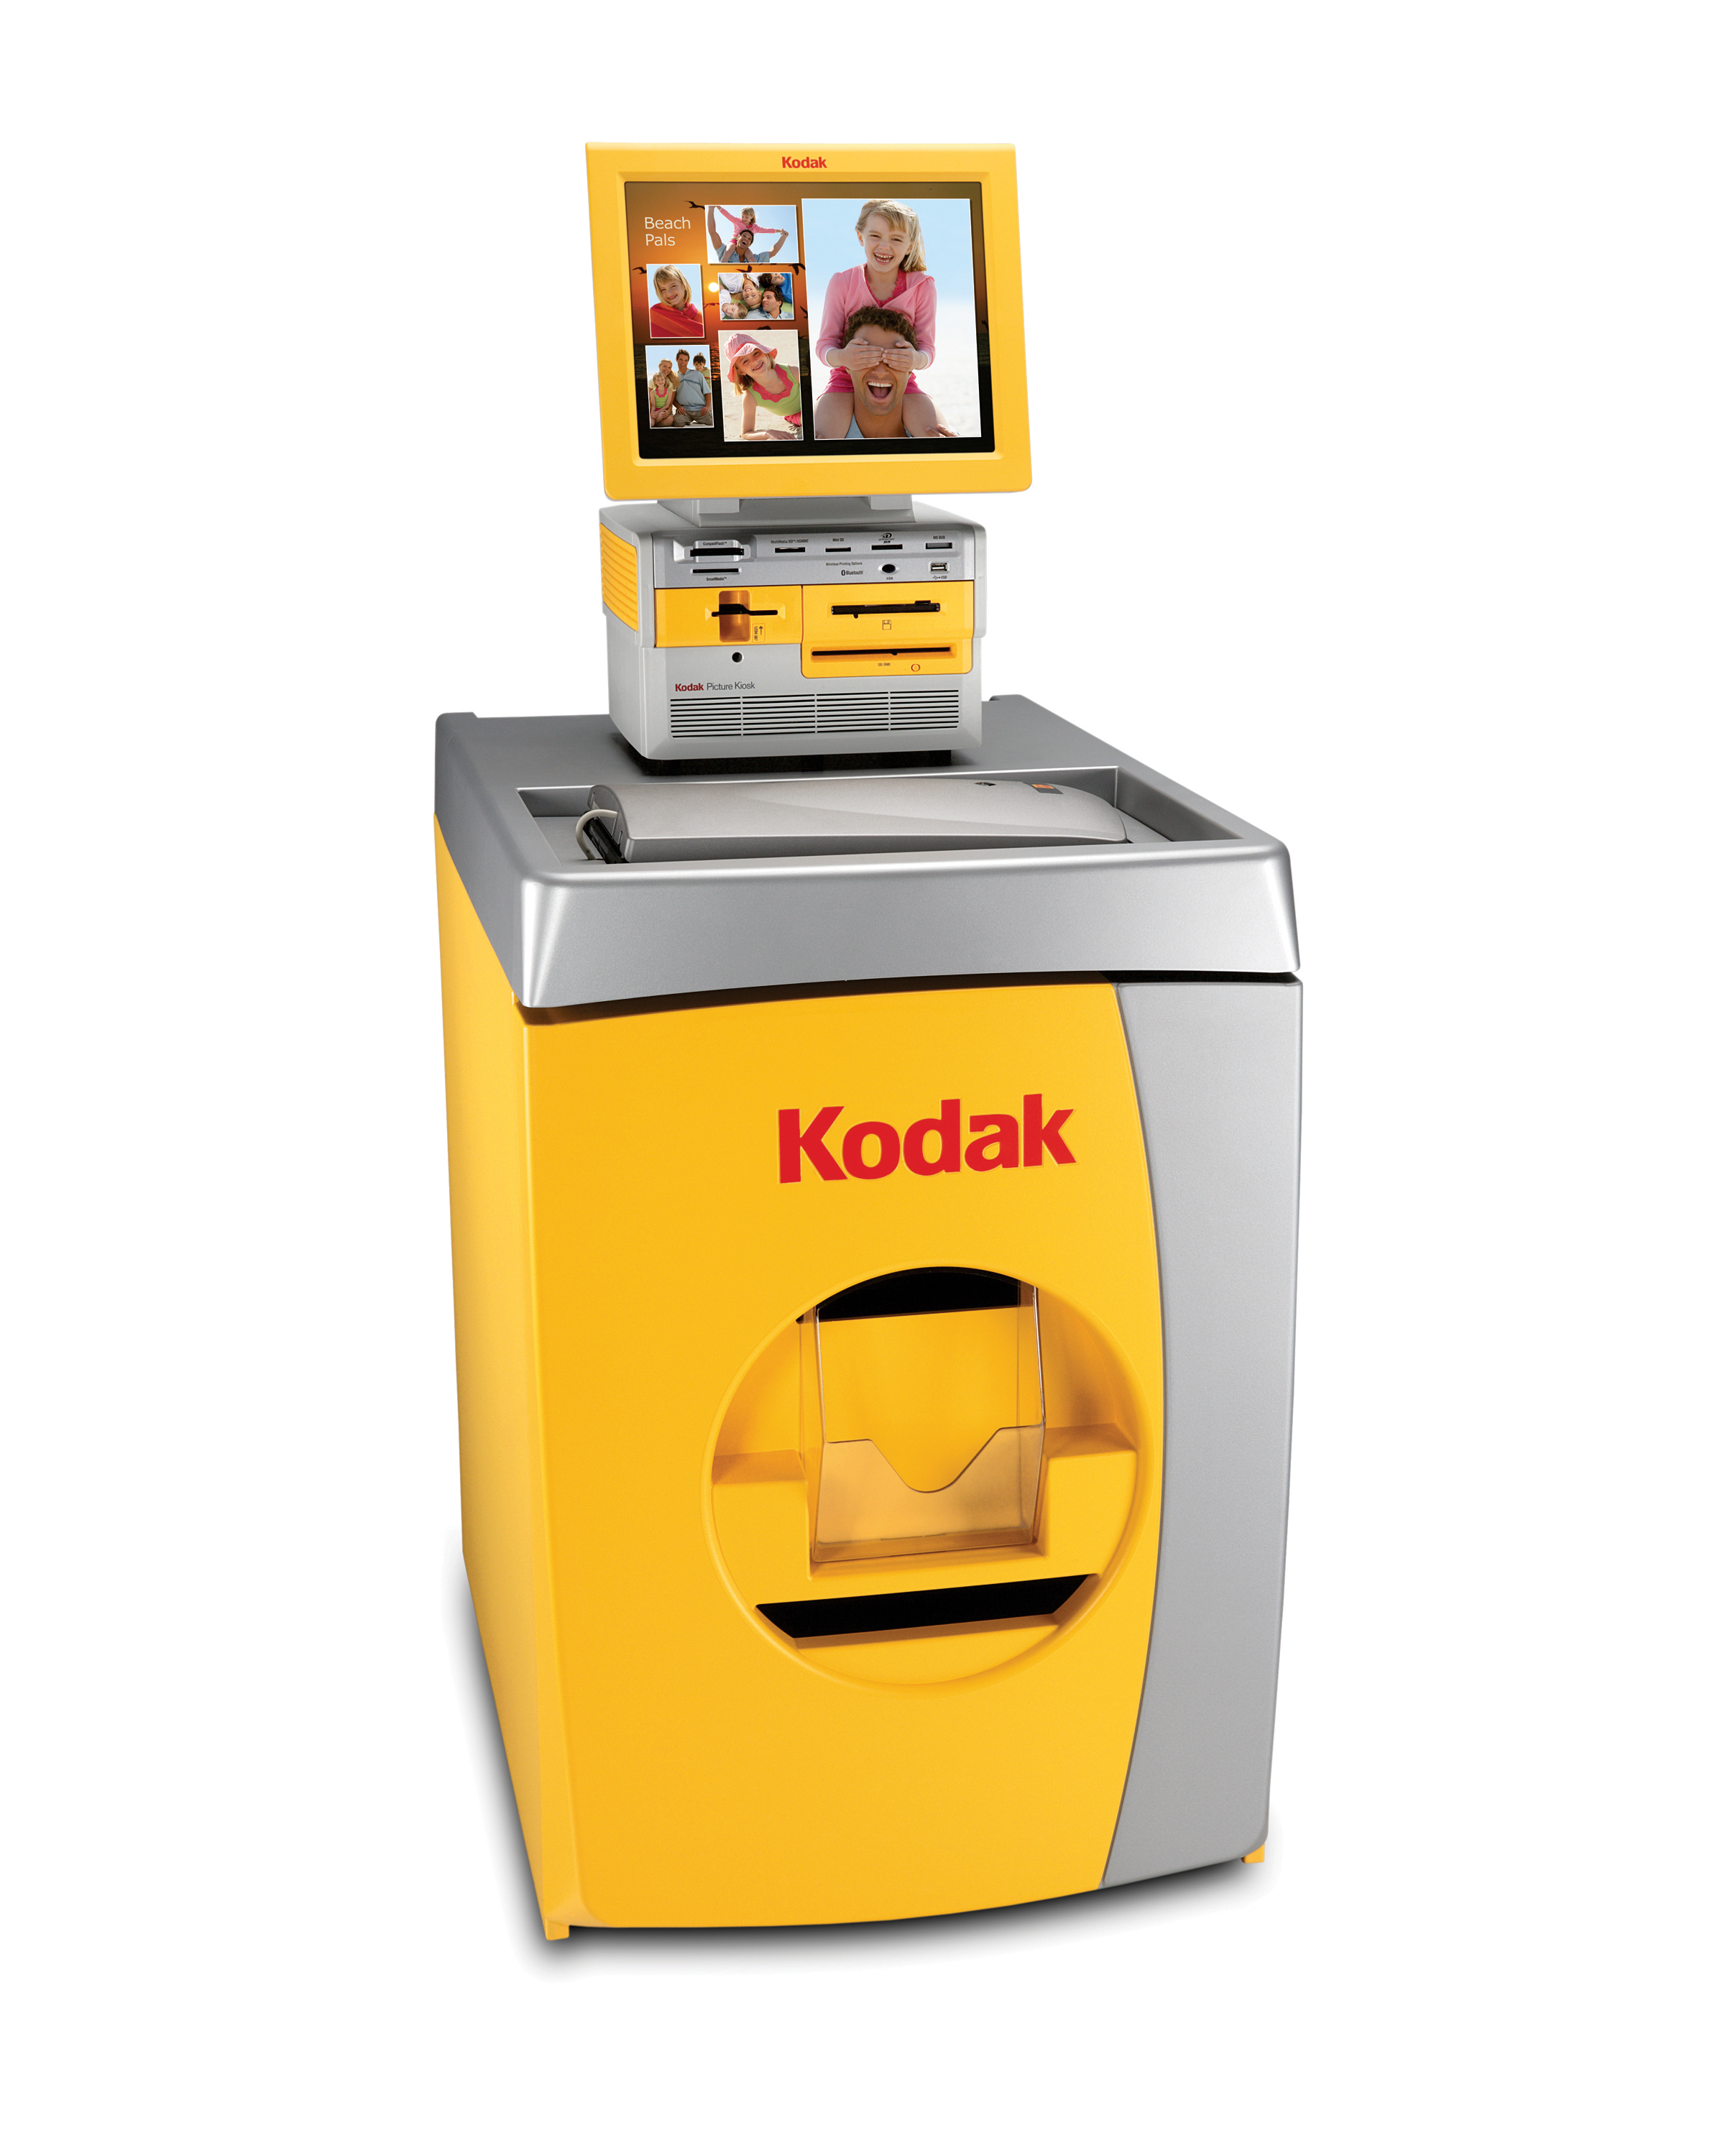 Новая стратегия компании Kodak включает развитие киосков самообслуживания